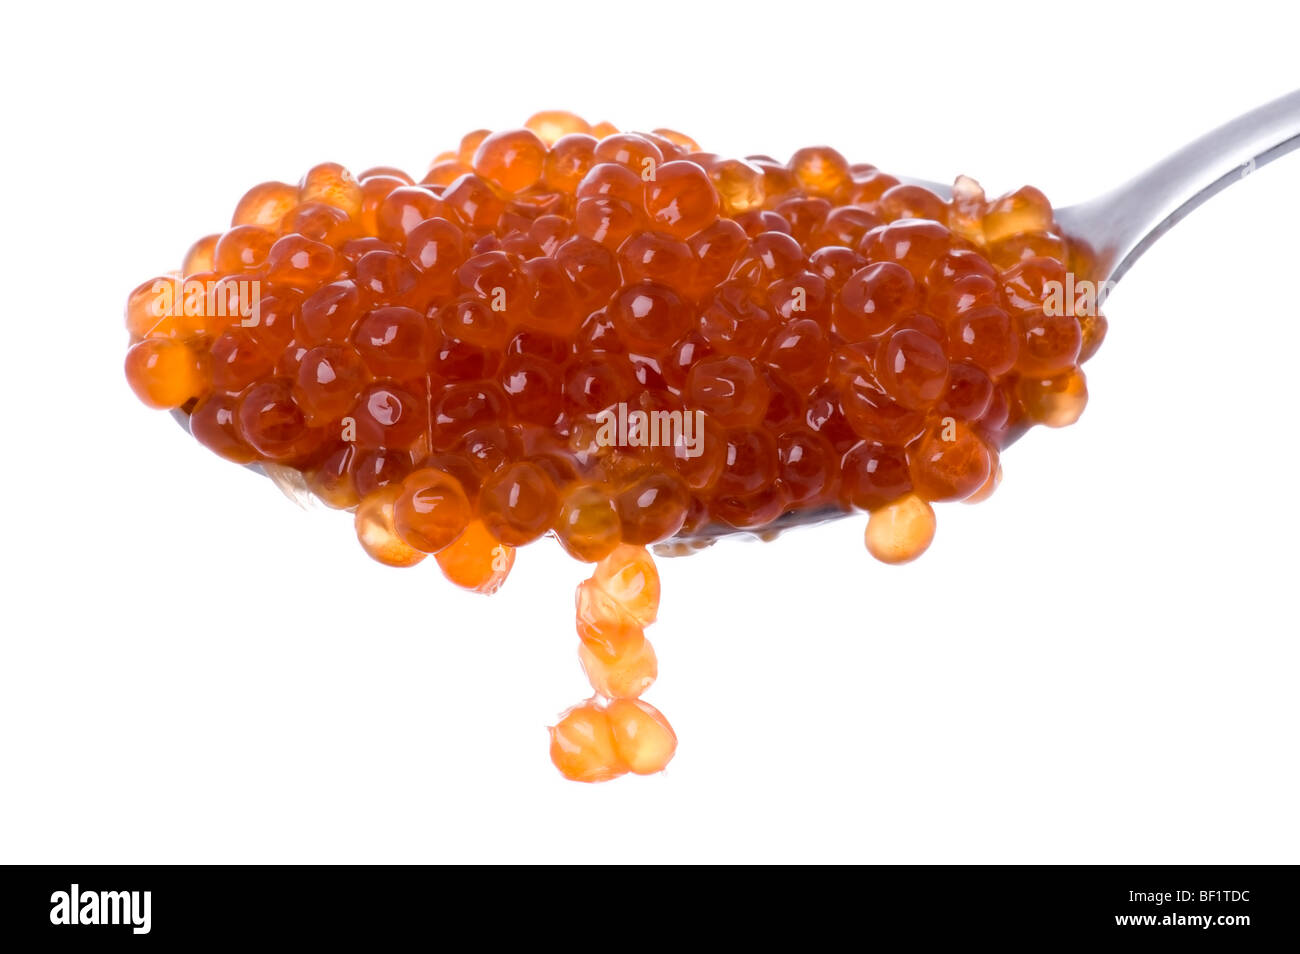 Objekt auf weiß - rotem Kaviar auf Löffel Stockfoto